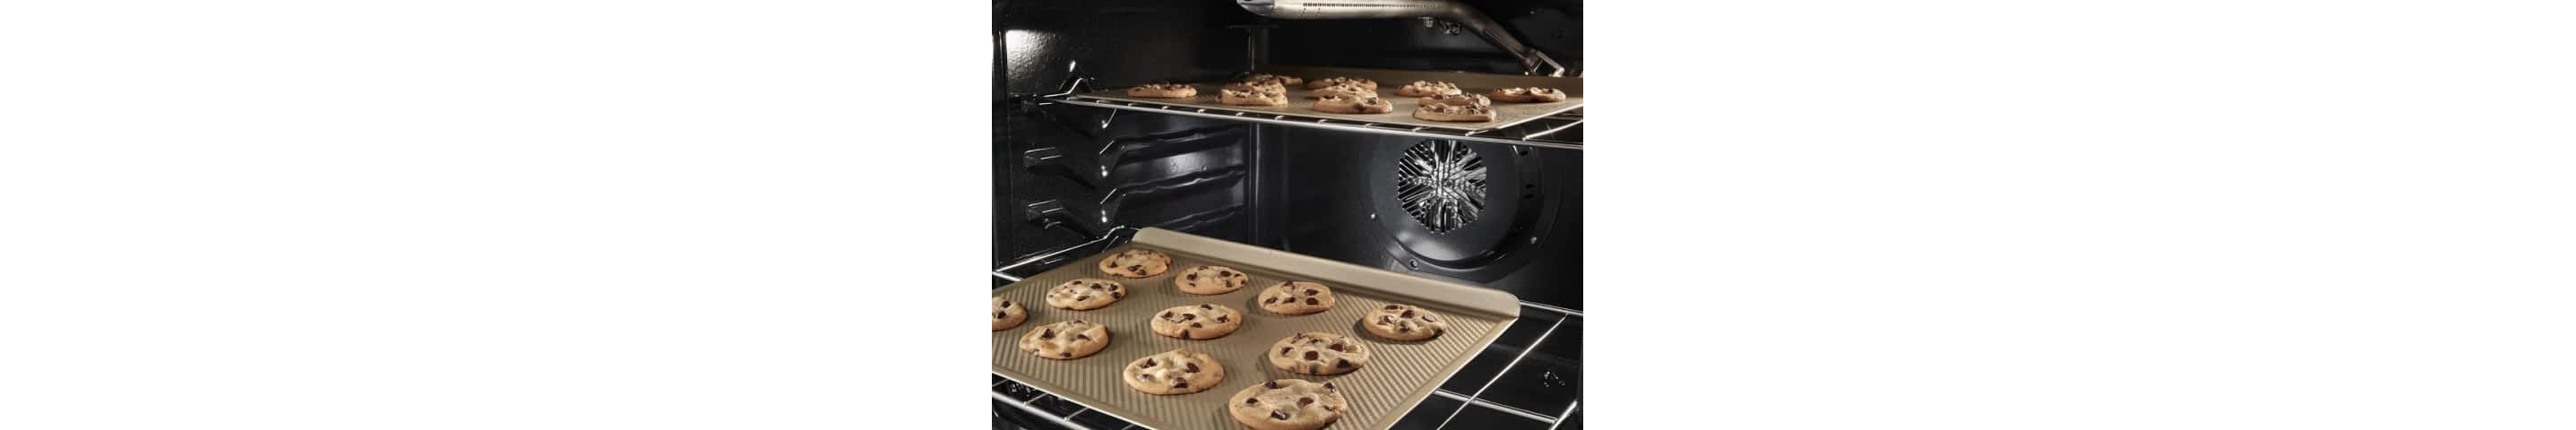 饼干烘焙在惠而浦®烤箱